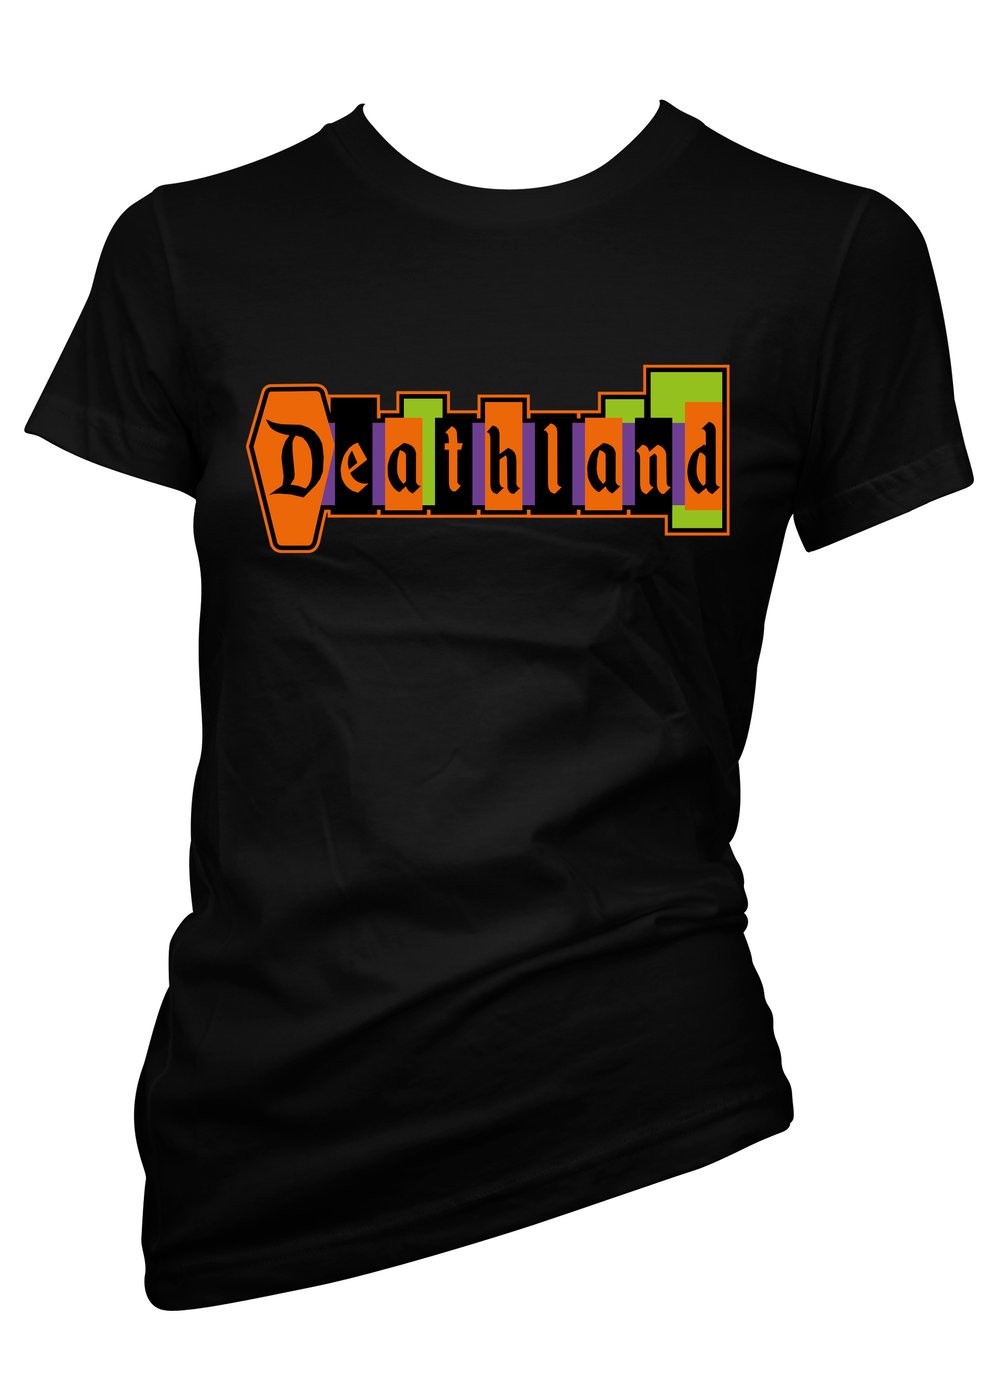 Woman’s Deathland T-shirt 